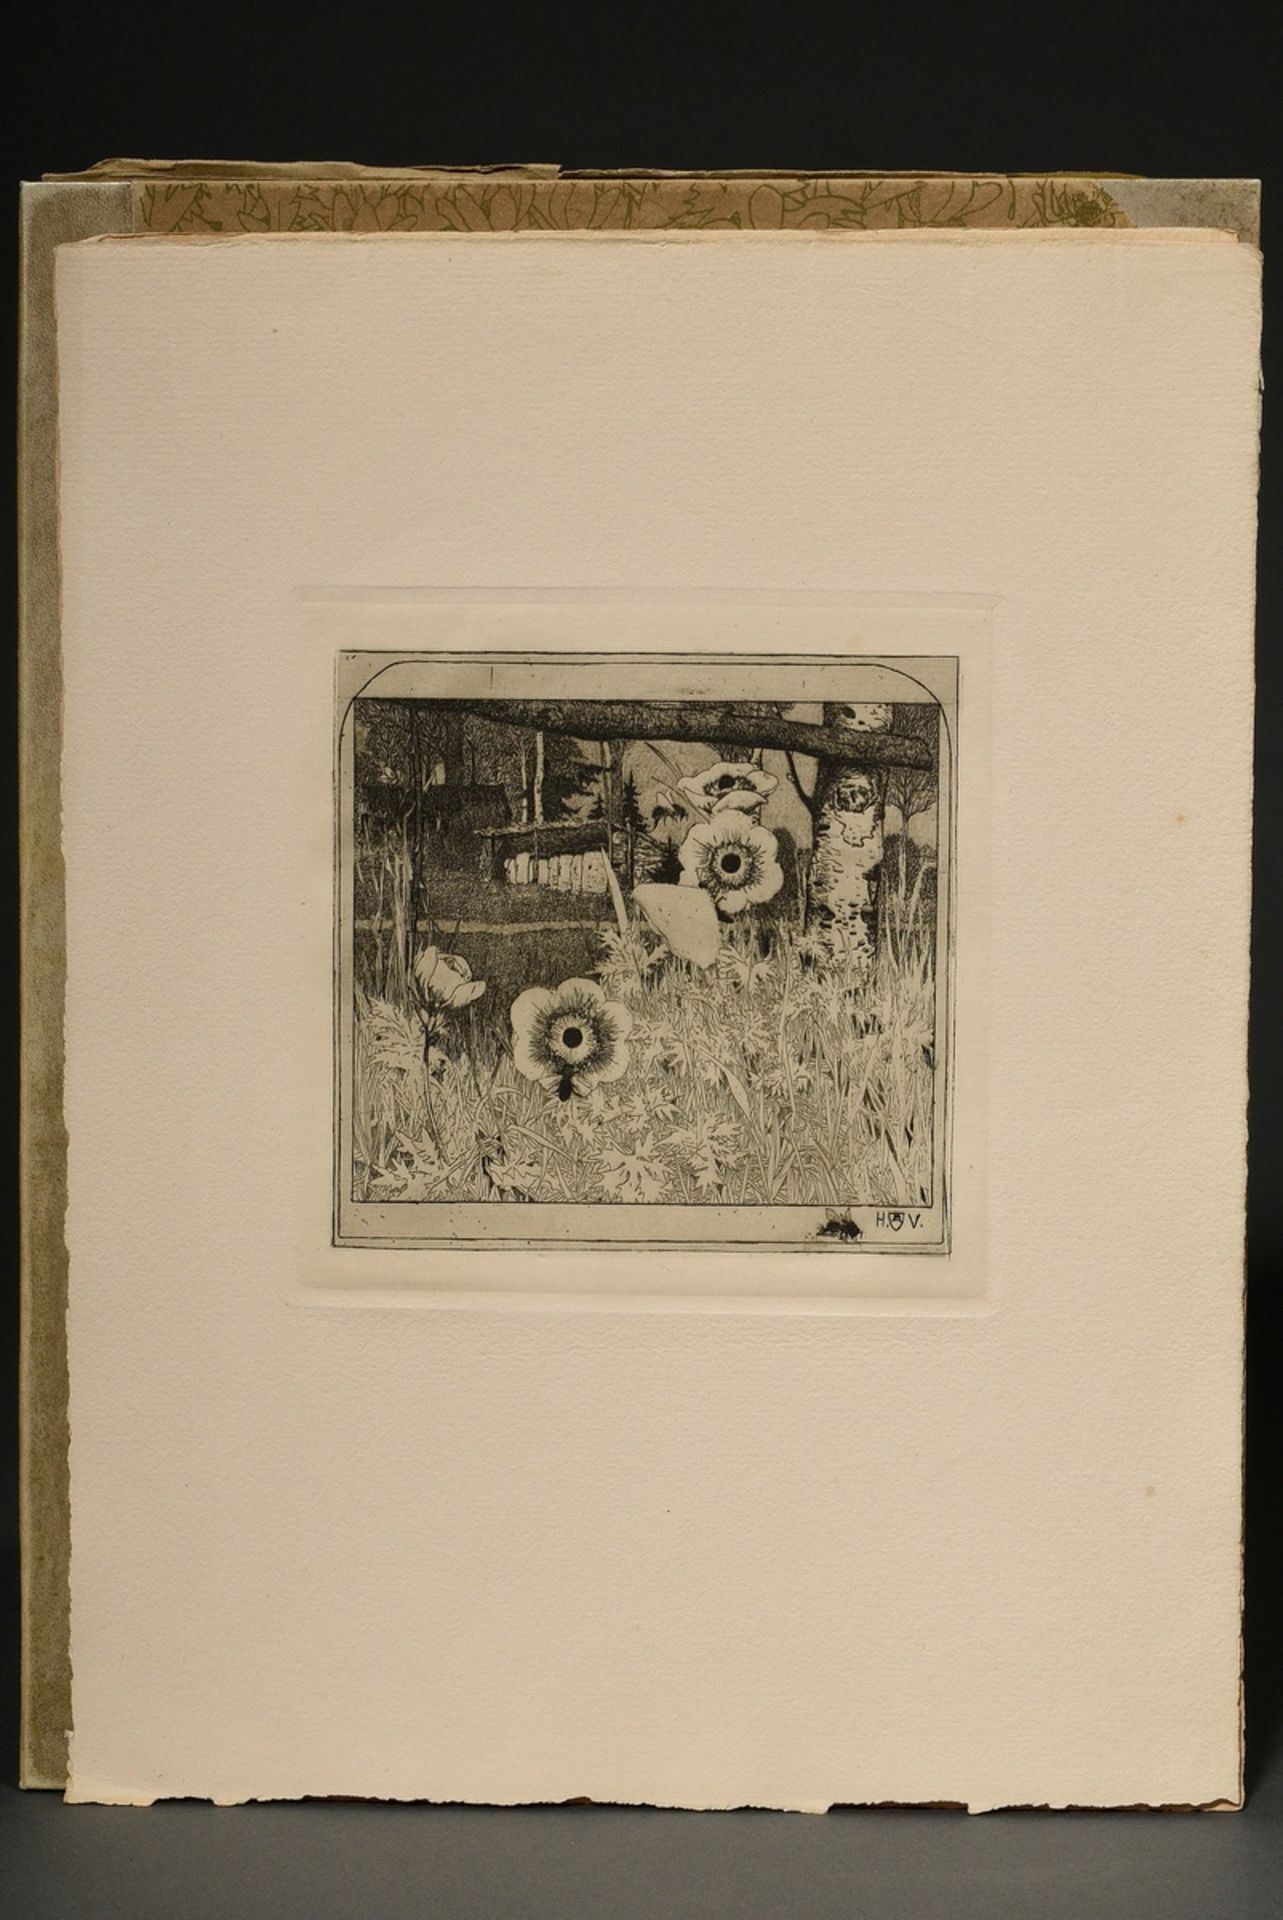 Vogeler, Heinrich (1872-1942) "An den Frühling" 1899/1901, Mappe mit 10 Radierungen und Vorblatt, P - Bild 4 aus 25